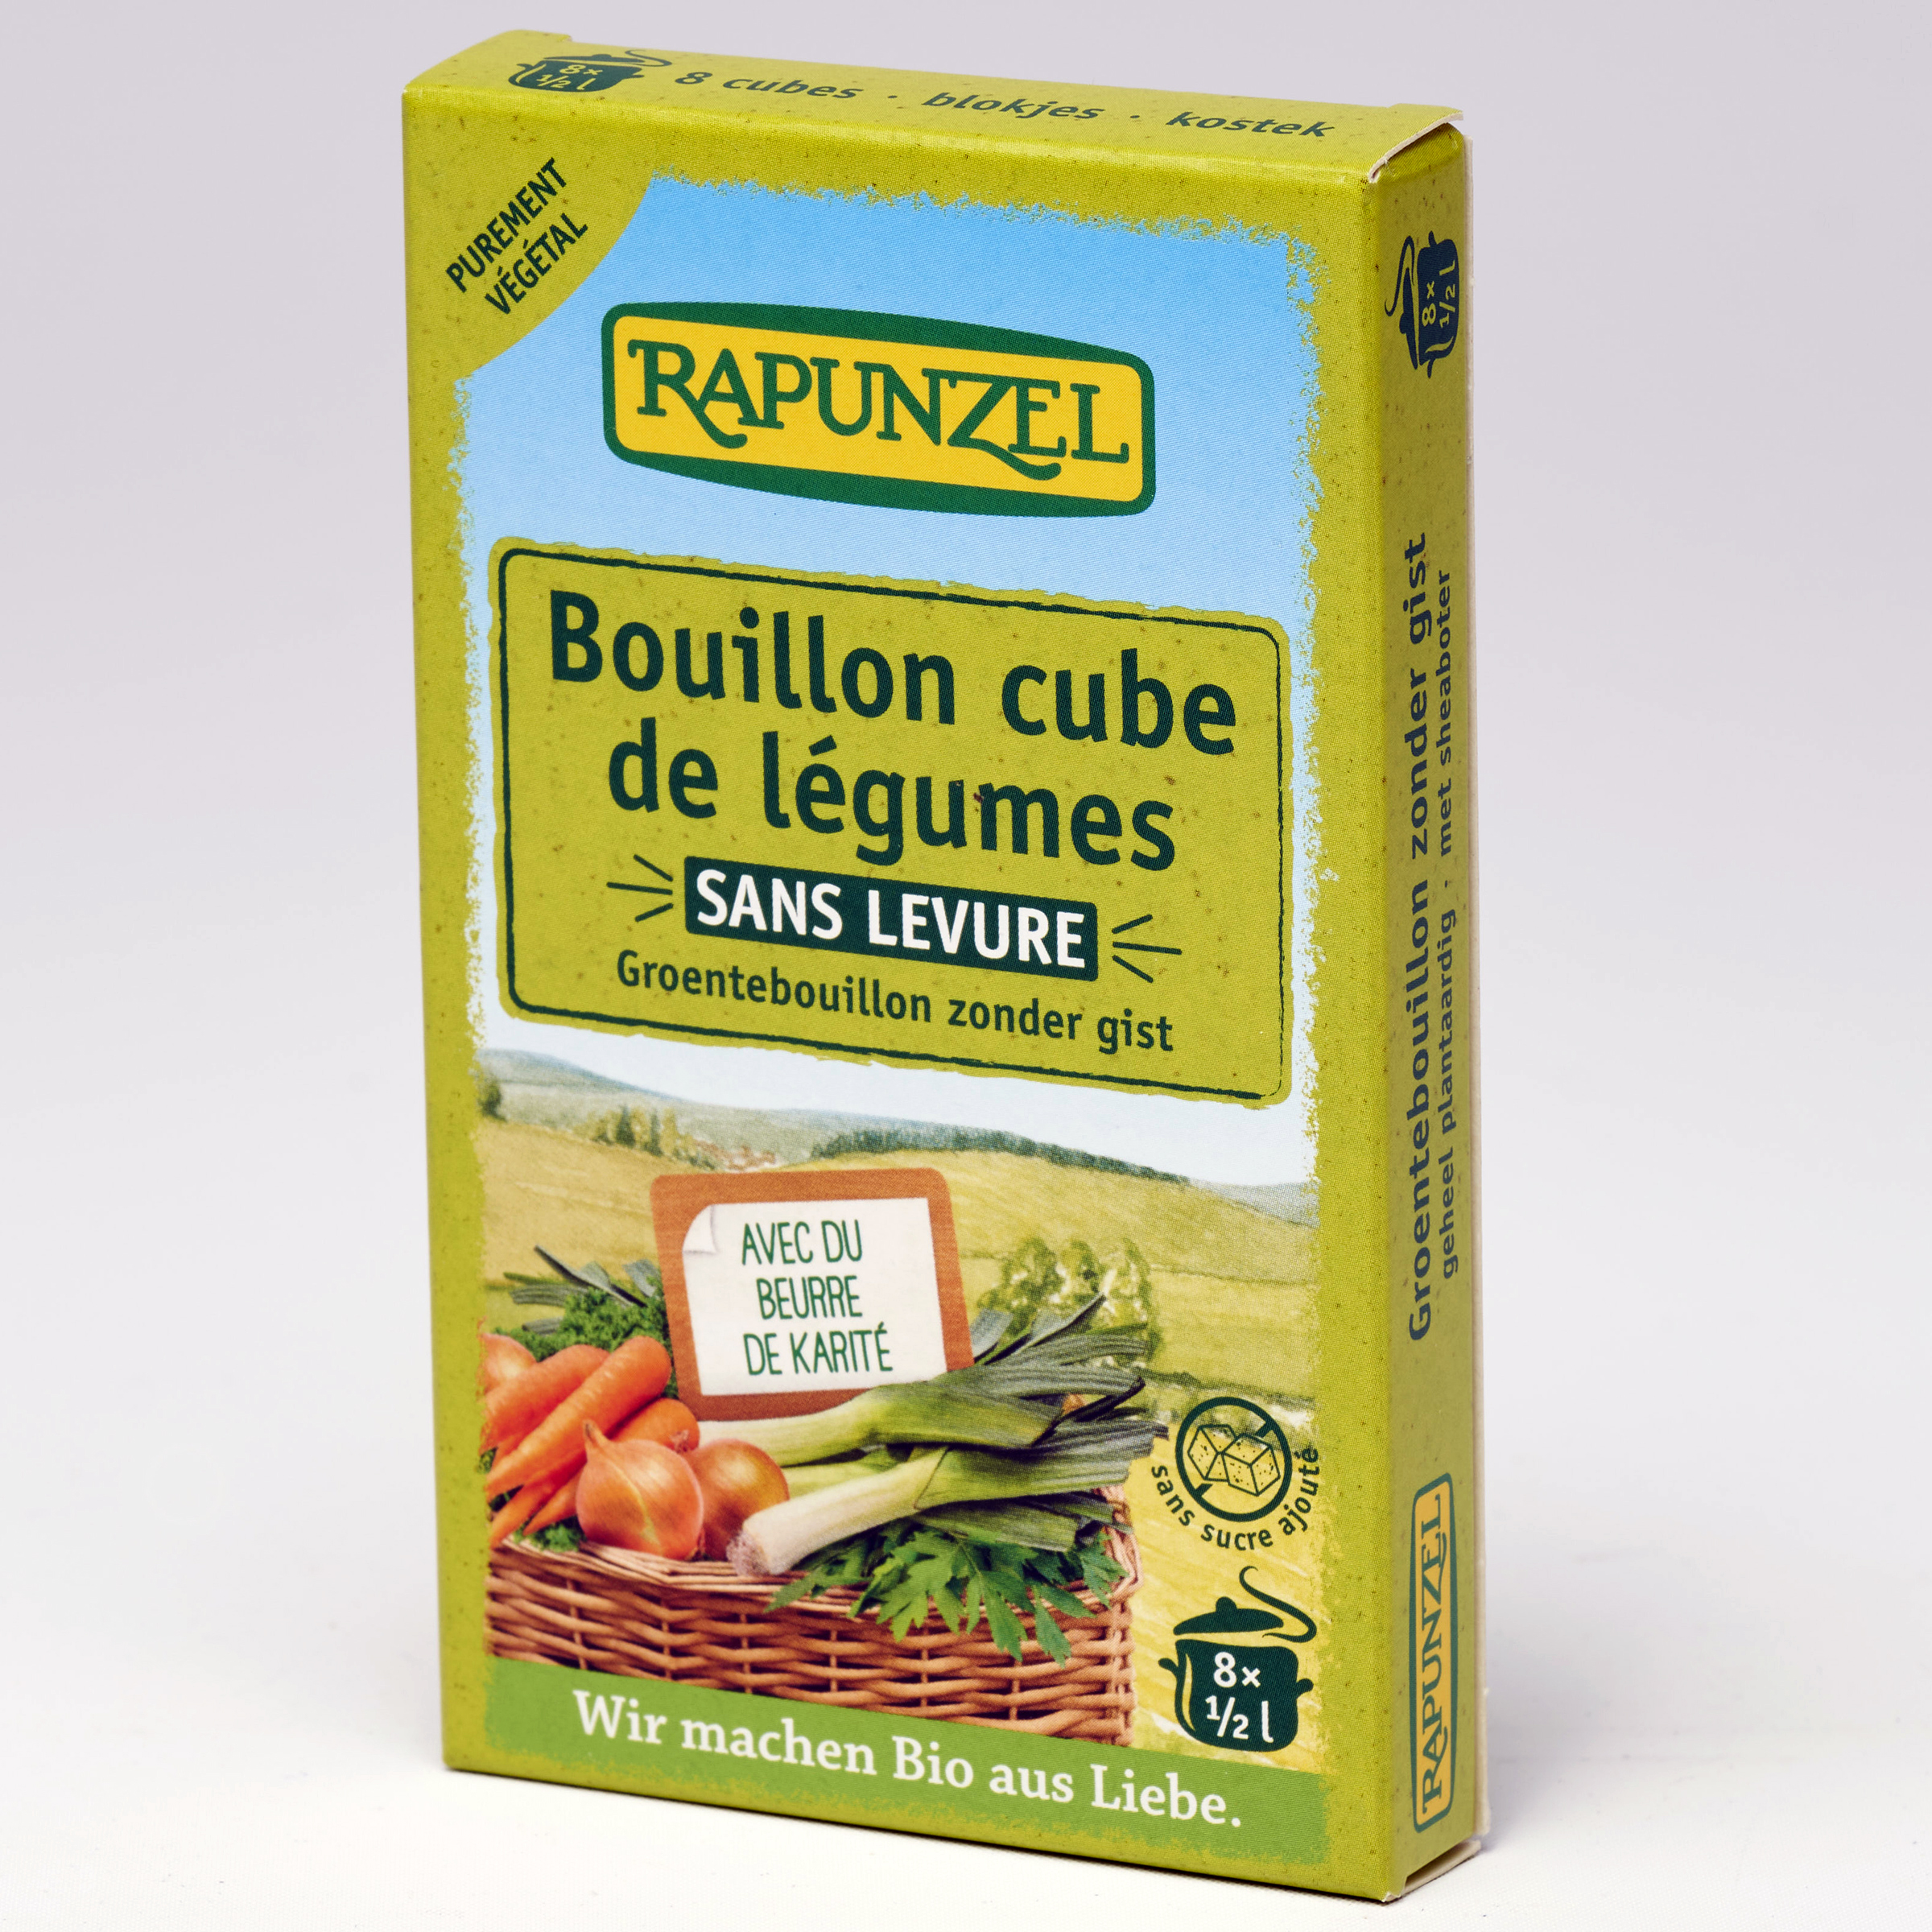 Rapunzel Bouillon cube de légumes sans levure - 